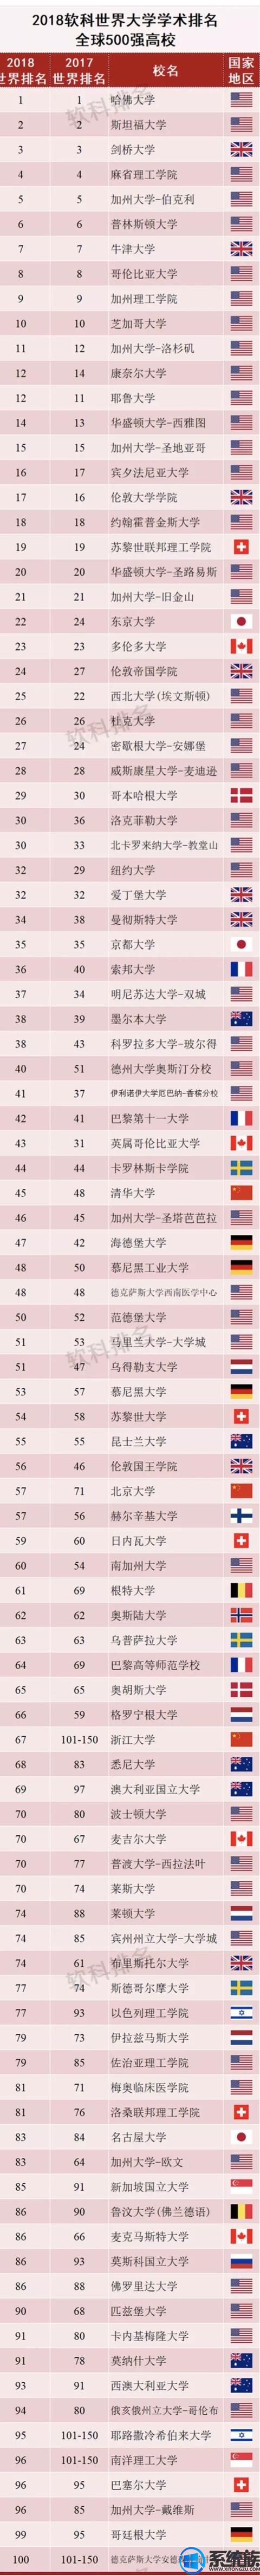 2018世界大学学术排名发布，中国内地51所大学上榜